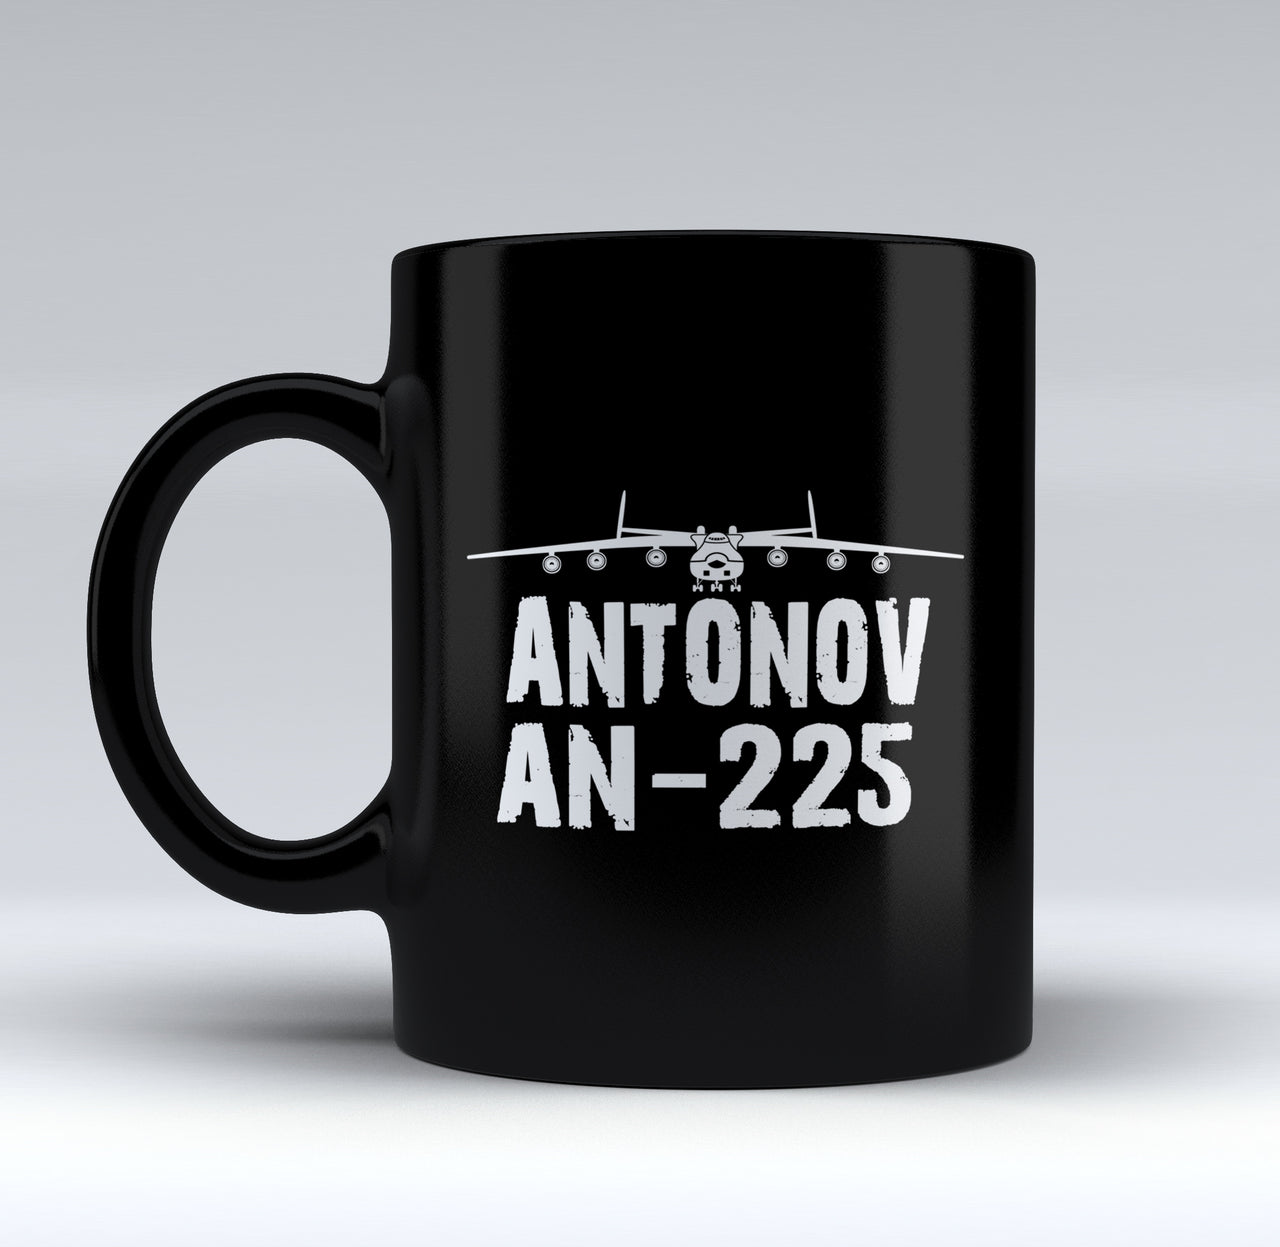 Antonov AN-225 & Plane Designed Black Mugs